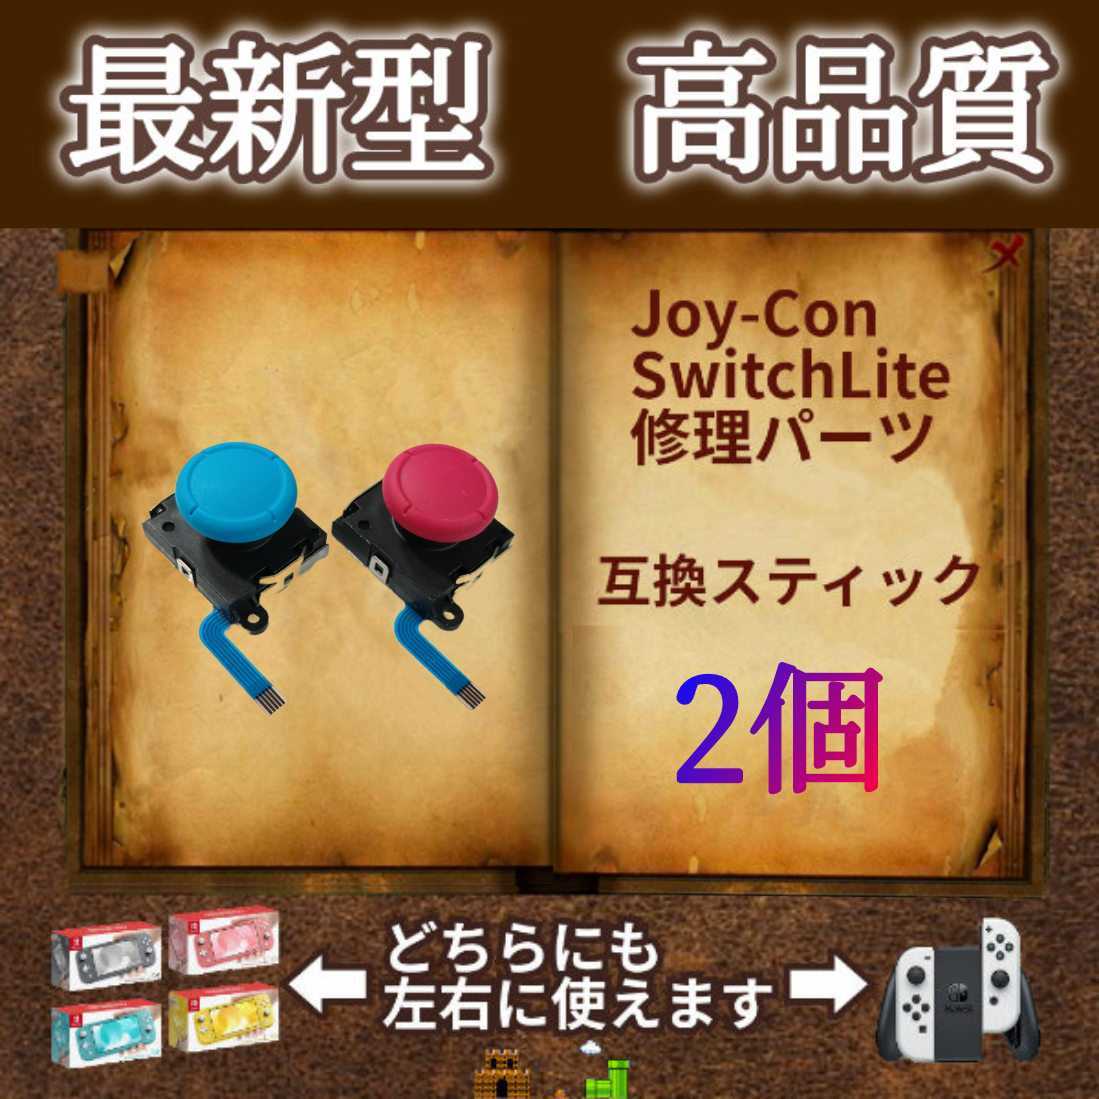 Nintendo Switch Joy-Con　アナログスティック・ジョイスティック　2個(赤1個・青1個)　ジョイコン・スイッチライトの補修パーツ